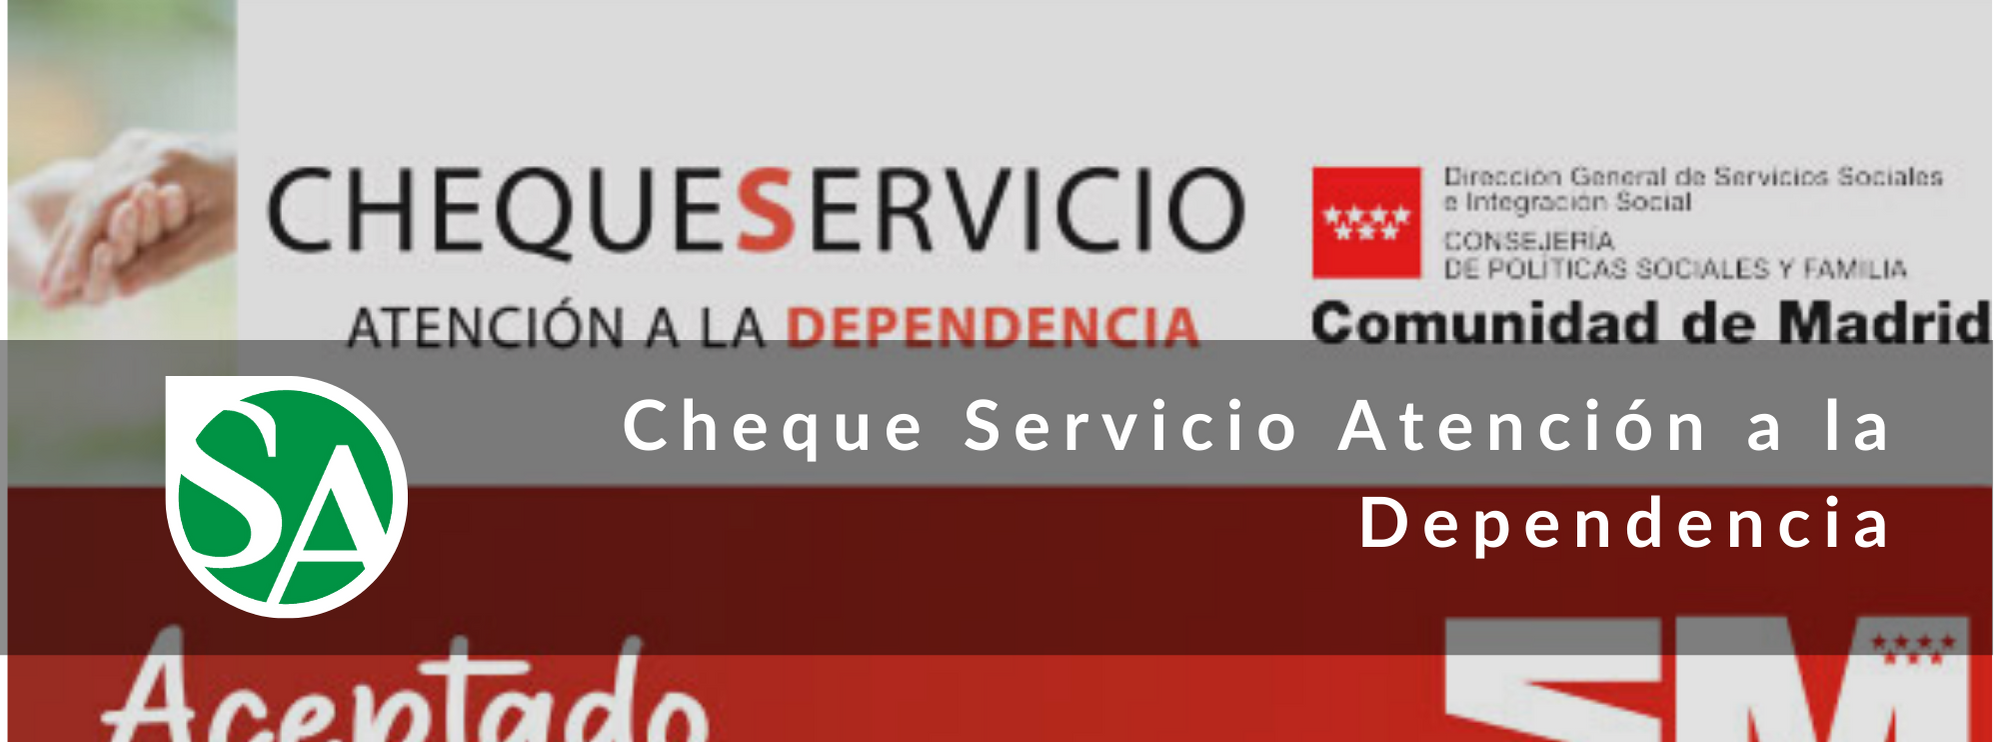 El Cheque Servicio de la Comunidad de Madrid, ¿cómo pedirlo